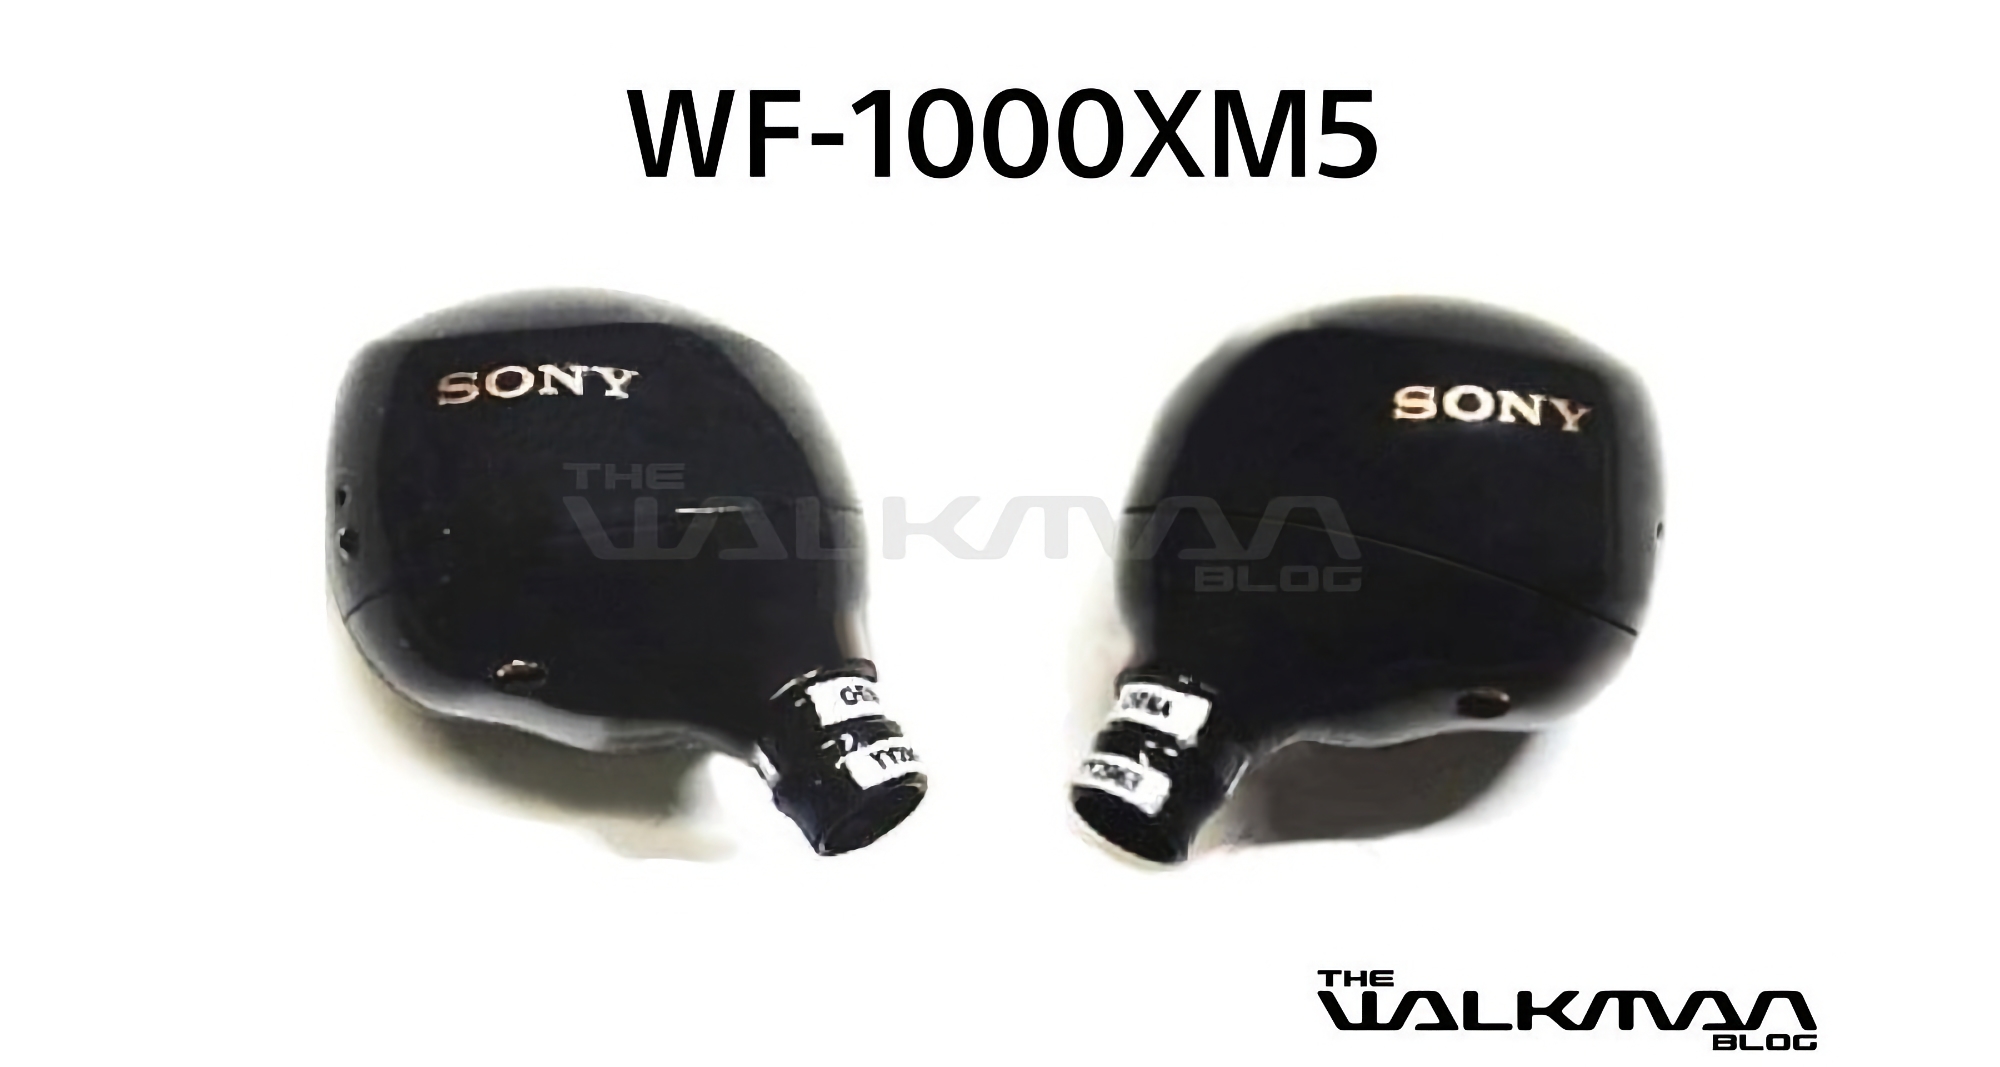 Des images du WF-1000XM5 de Sony, le nouveau casque TWS phare de la société, ont fait surface en ligne.